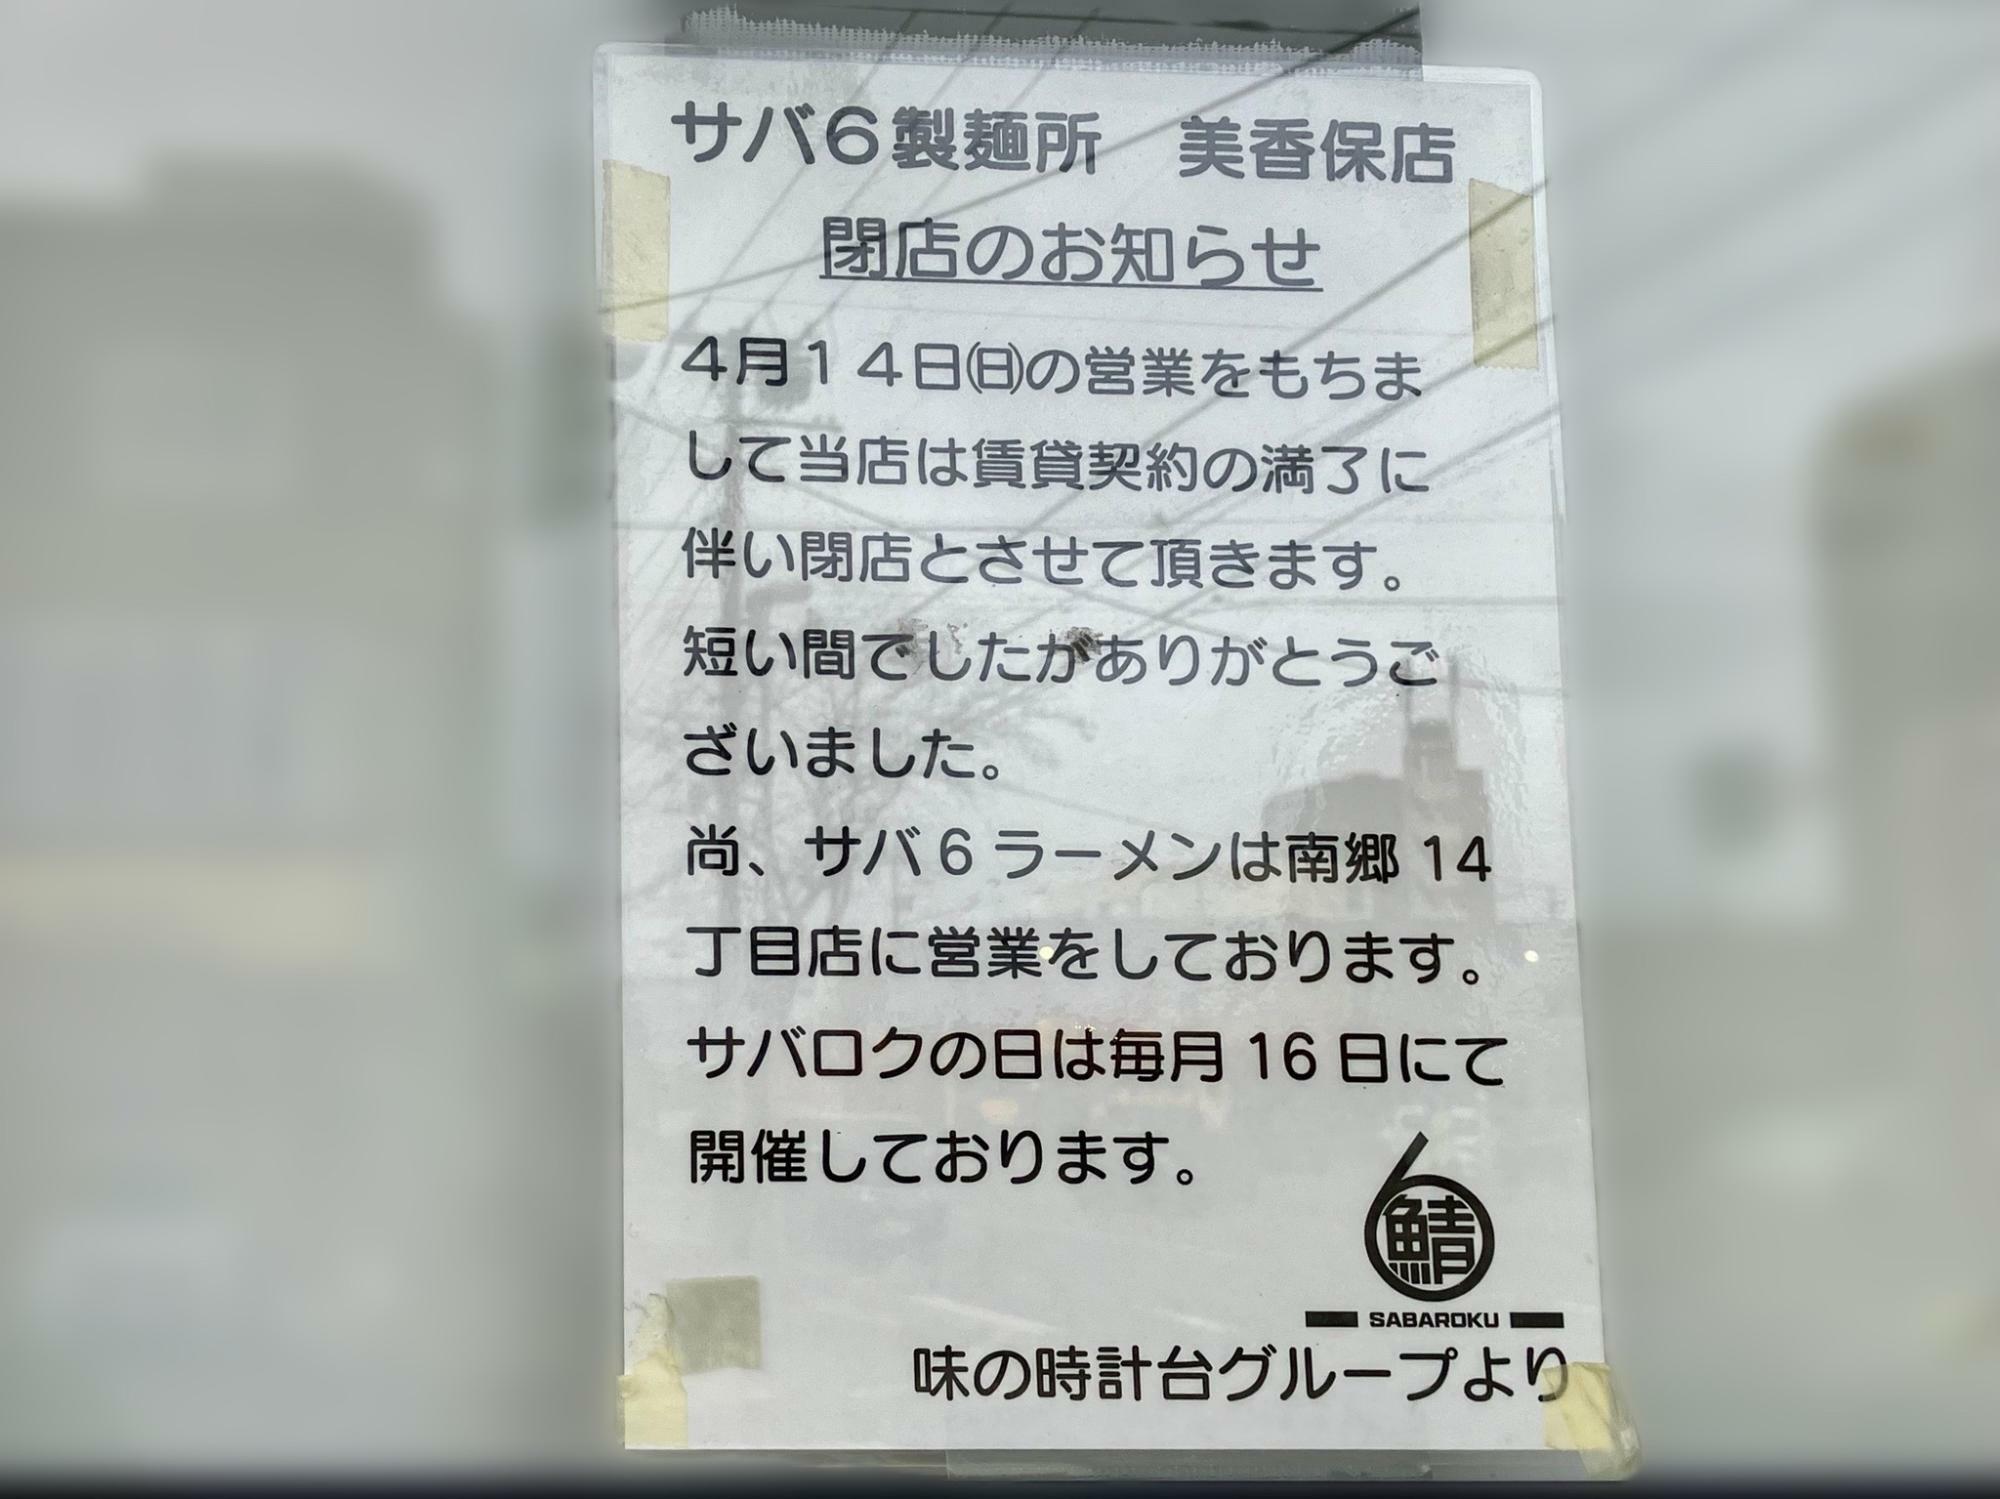 「サバ6製麺所 美香保店」閉店のお知らせ